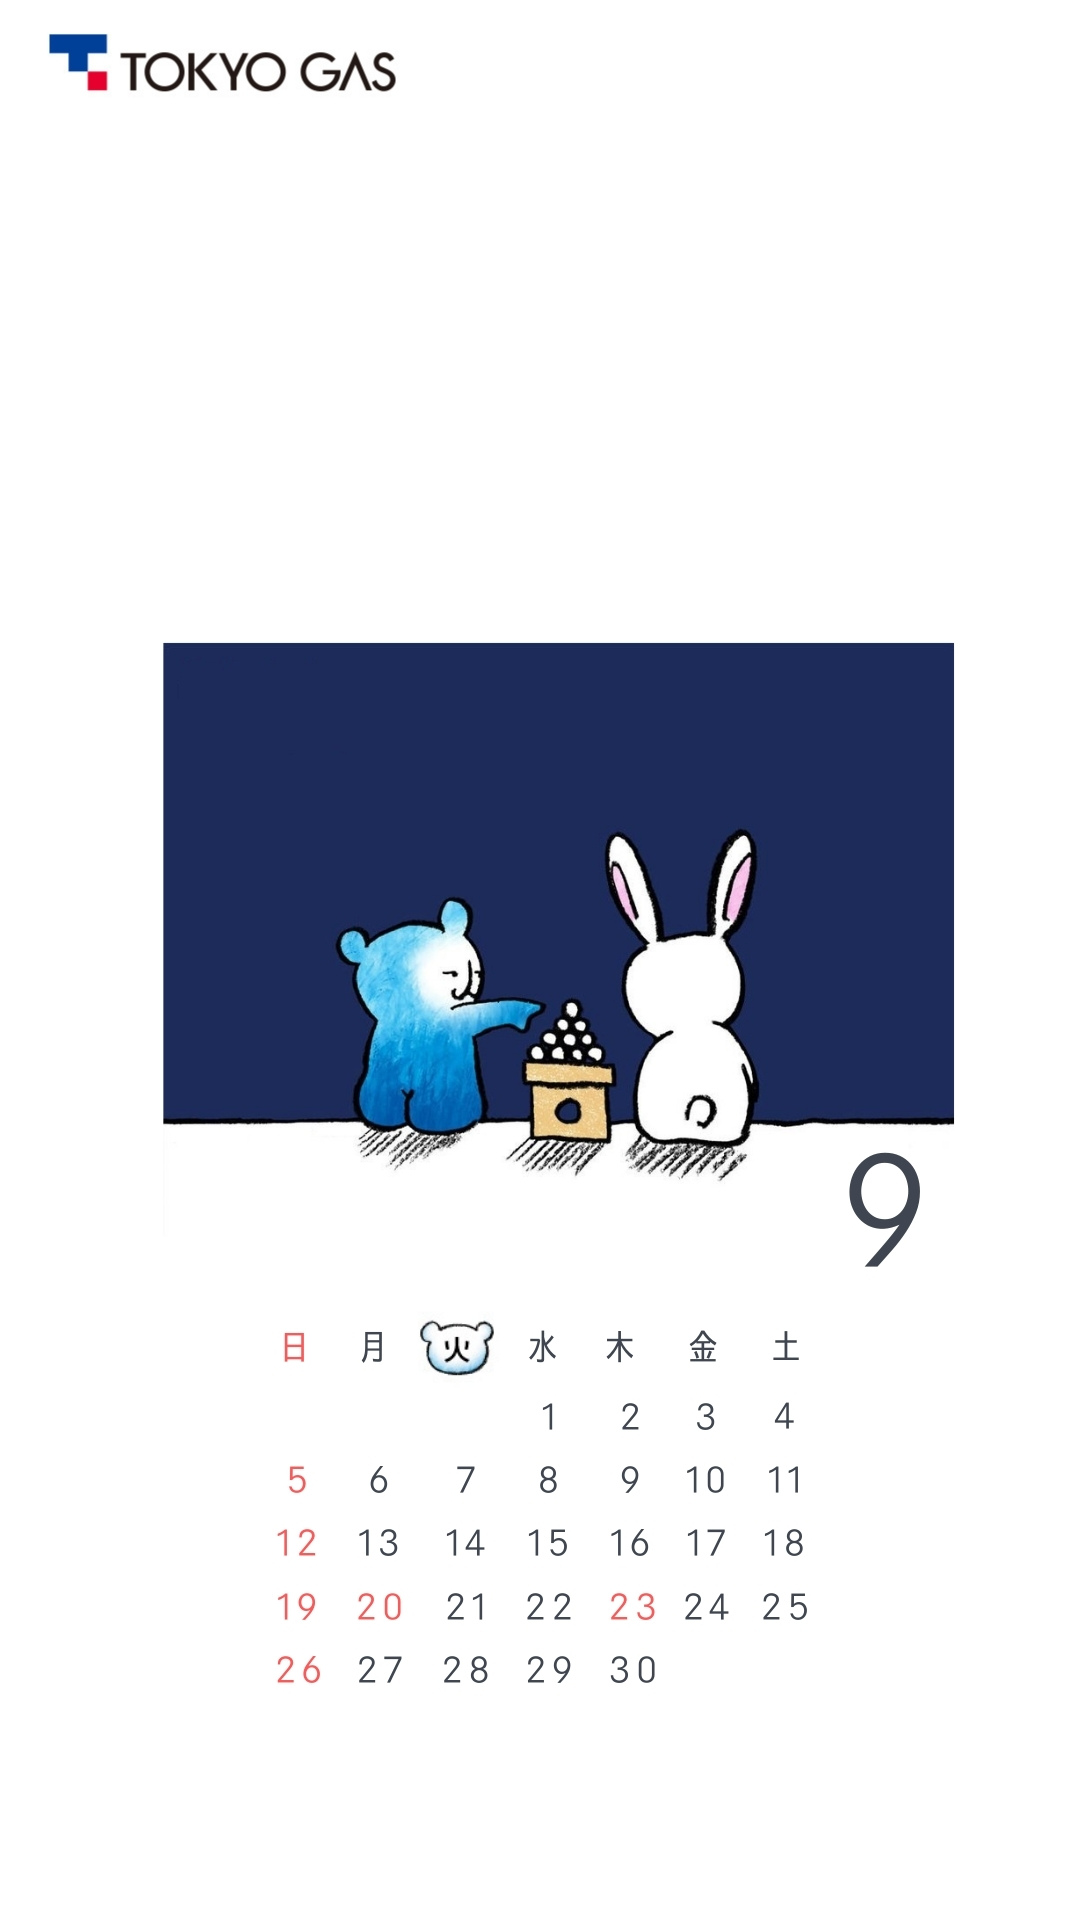 東京ガス グループ 公式 9月 カレンダー配布 東京ガス キャラクター パッチョ のスマホ用カレンダー壁紙です 使っていただけたら嬉しいです 今年の十五夜 は 9月21日です Wallpaper 壁紙 お月見 T Co Ltk0kazkgl Twitter